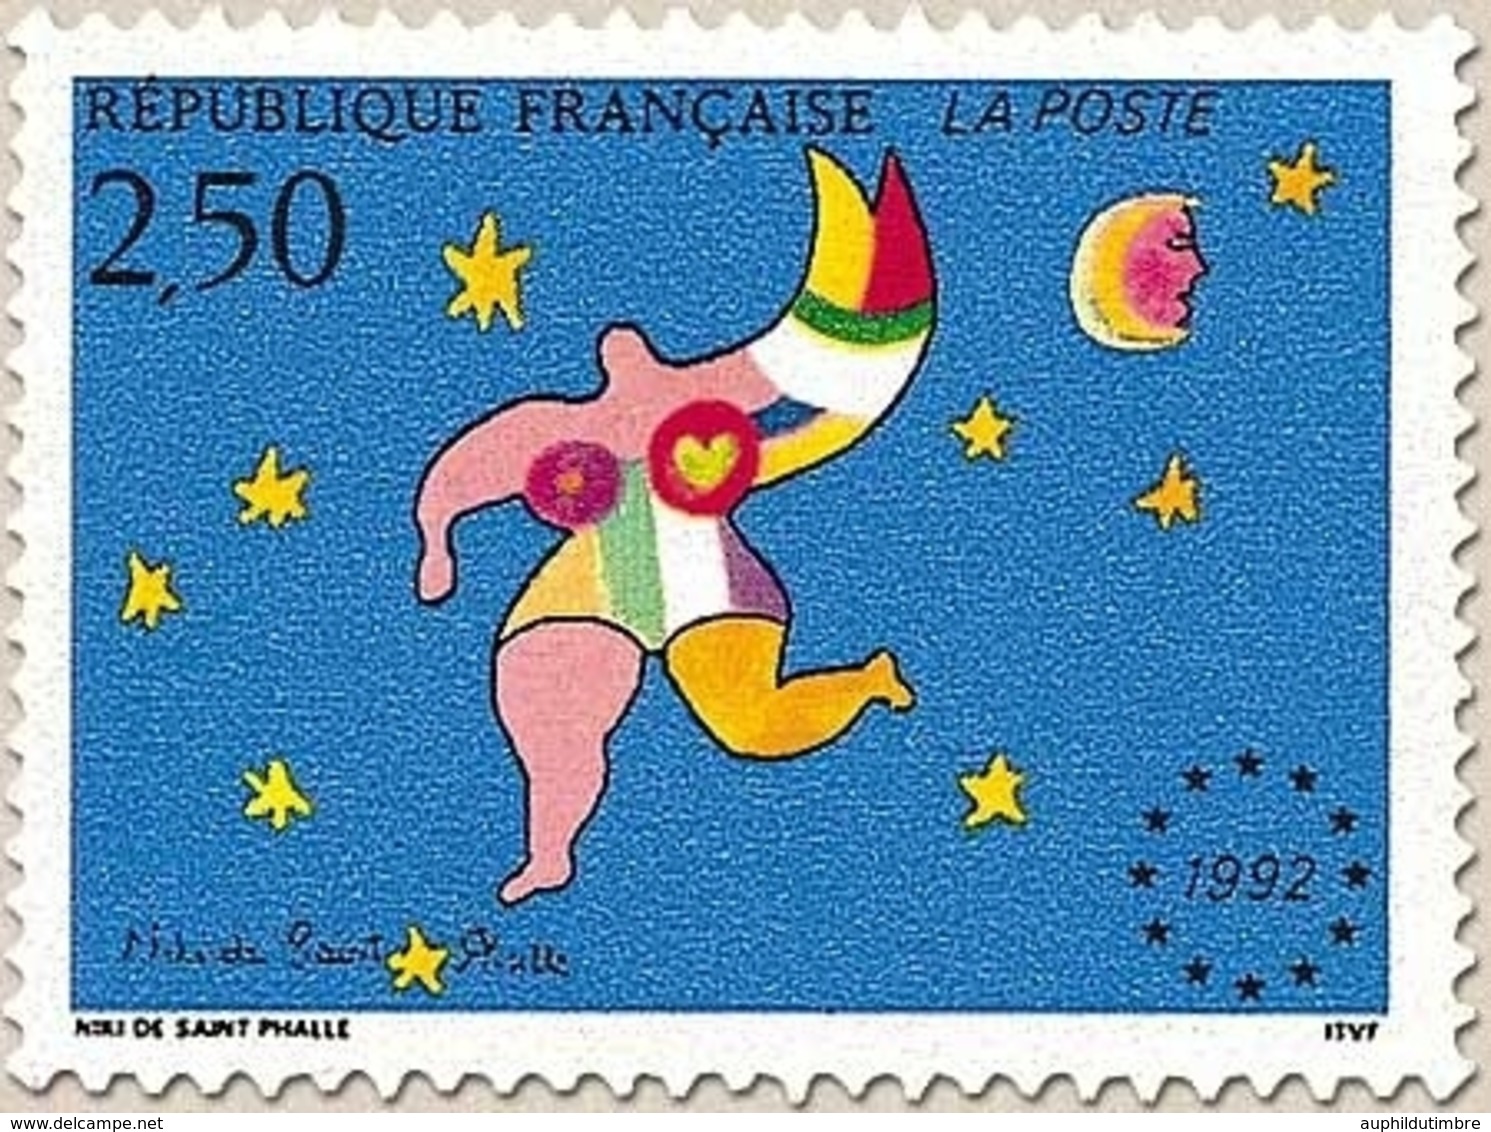 Mise En Vigueur Du Marché Unique Européen. Composition De N. De Saint-Phalle  2f.50 Multicolore Y2776 - Ongebruikt